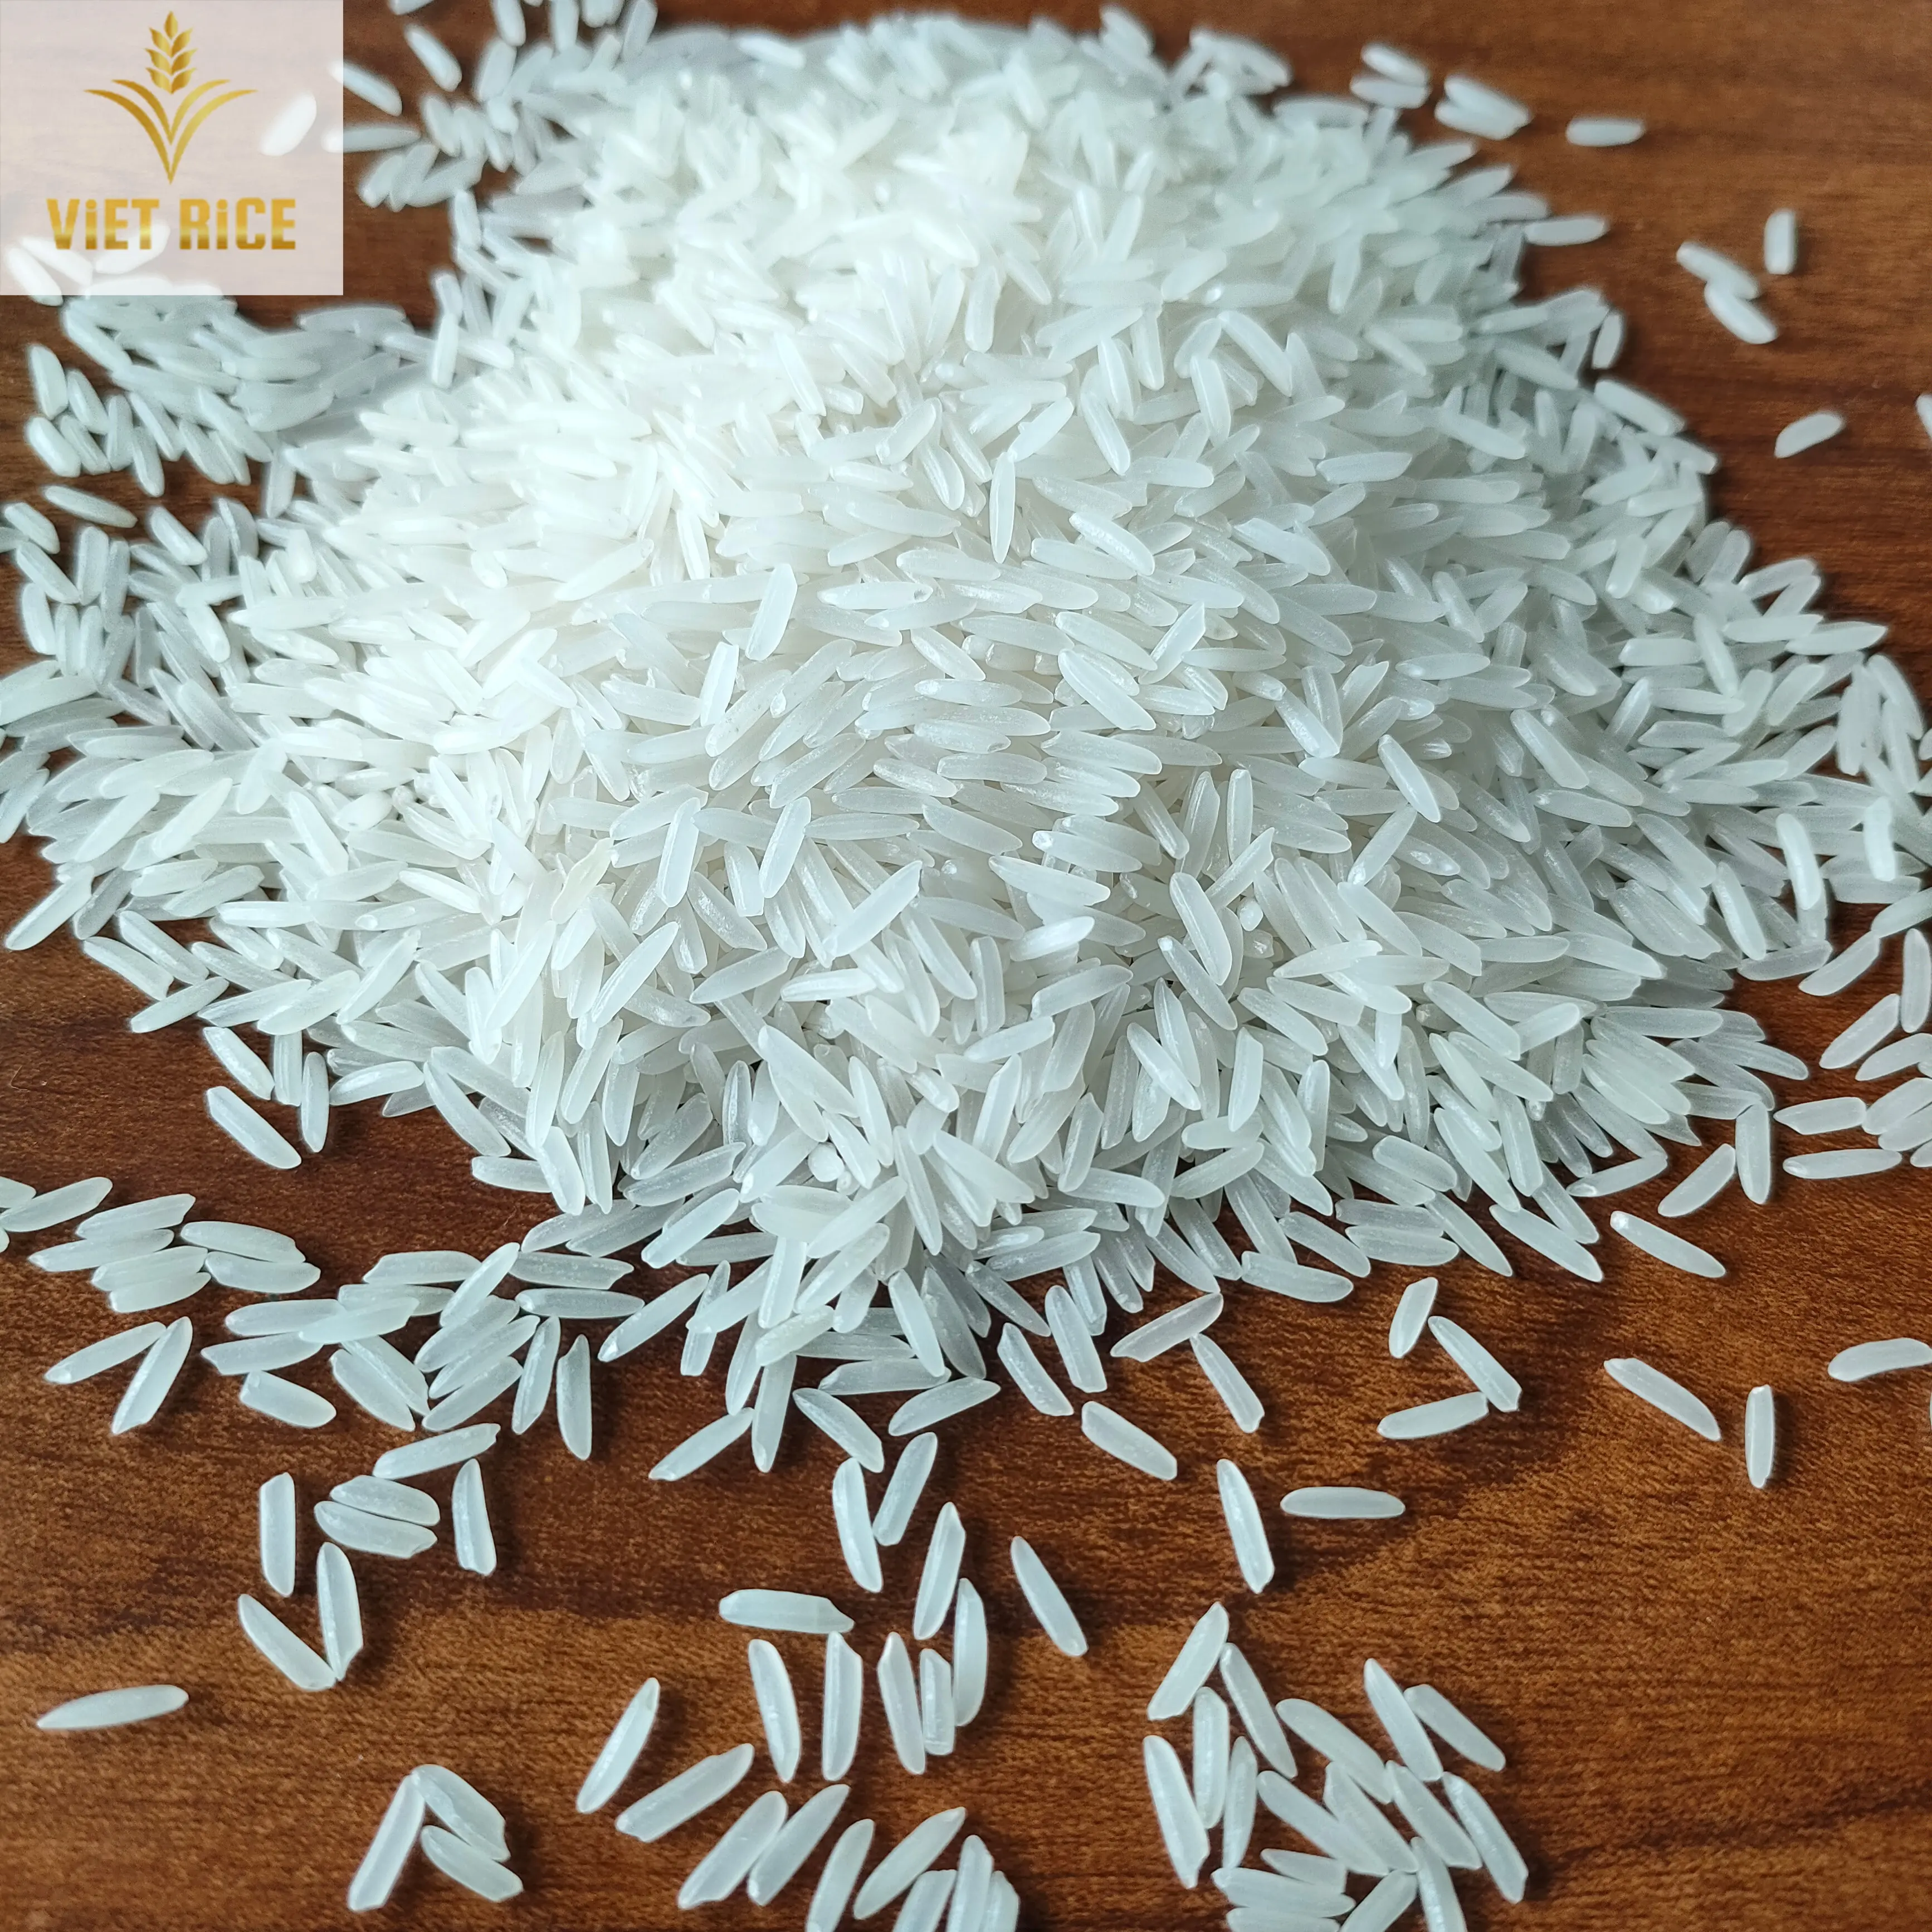 프리미엄 긴 곡물 향기로운 흰 쌀 ST25-최고의 제조 업체 및 수출업자가 공급하는 베트남 최고의 쌀